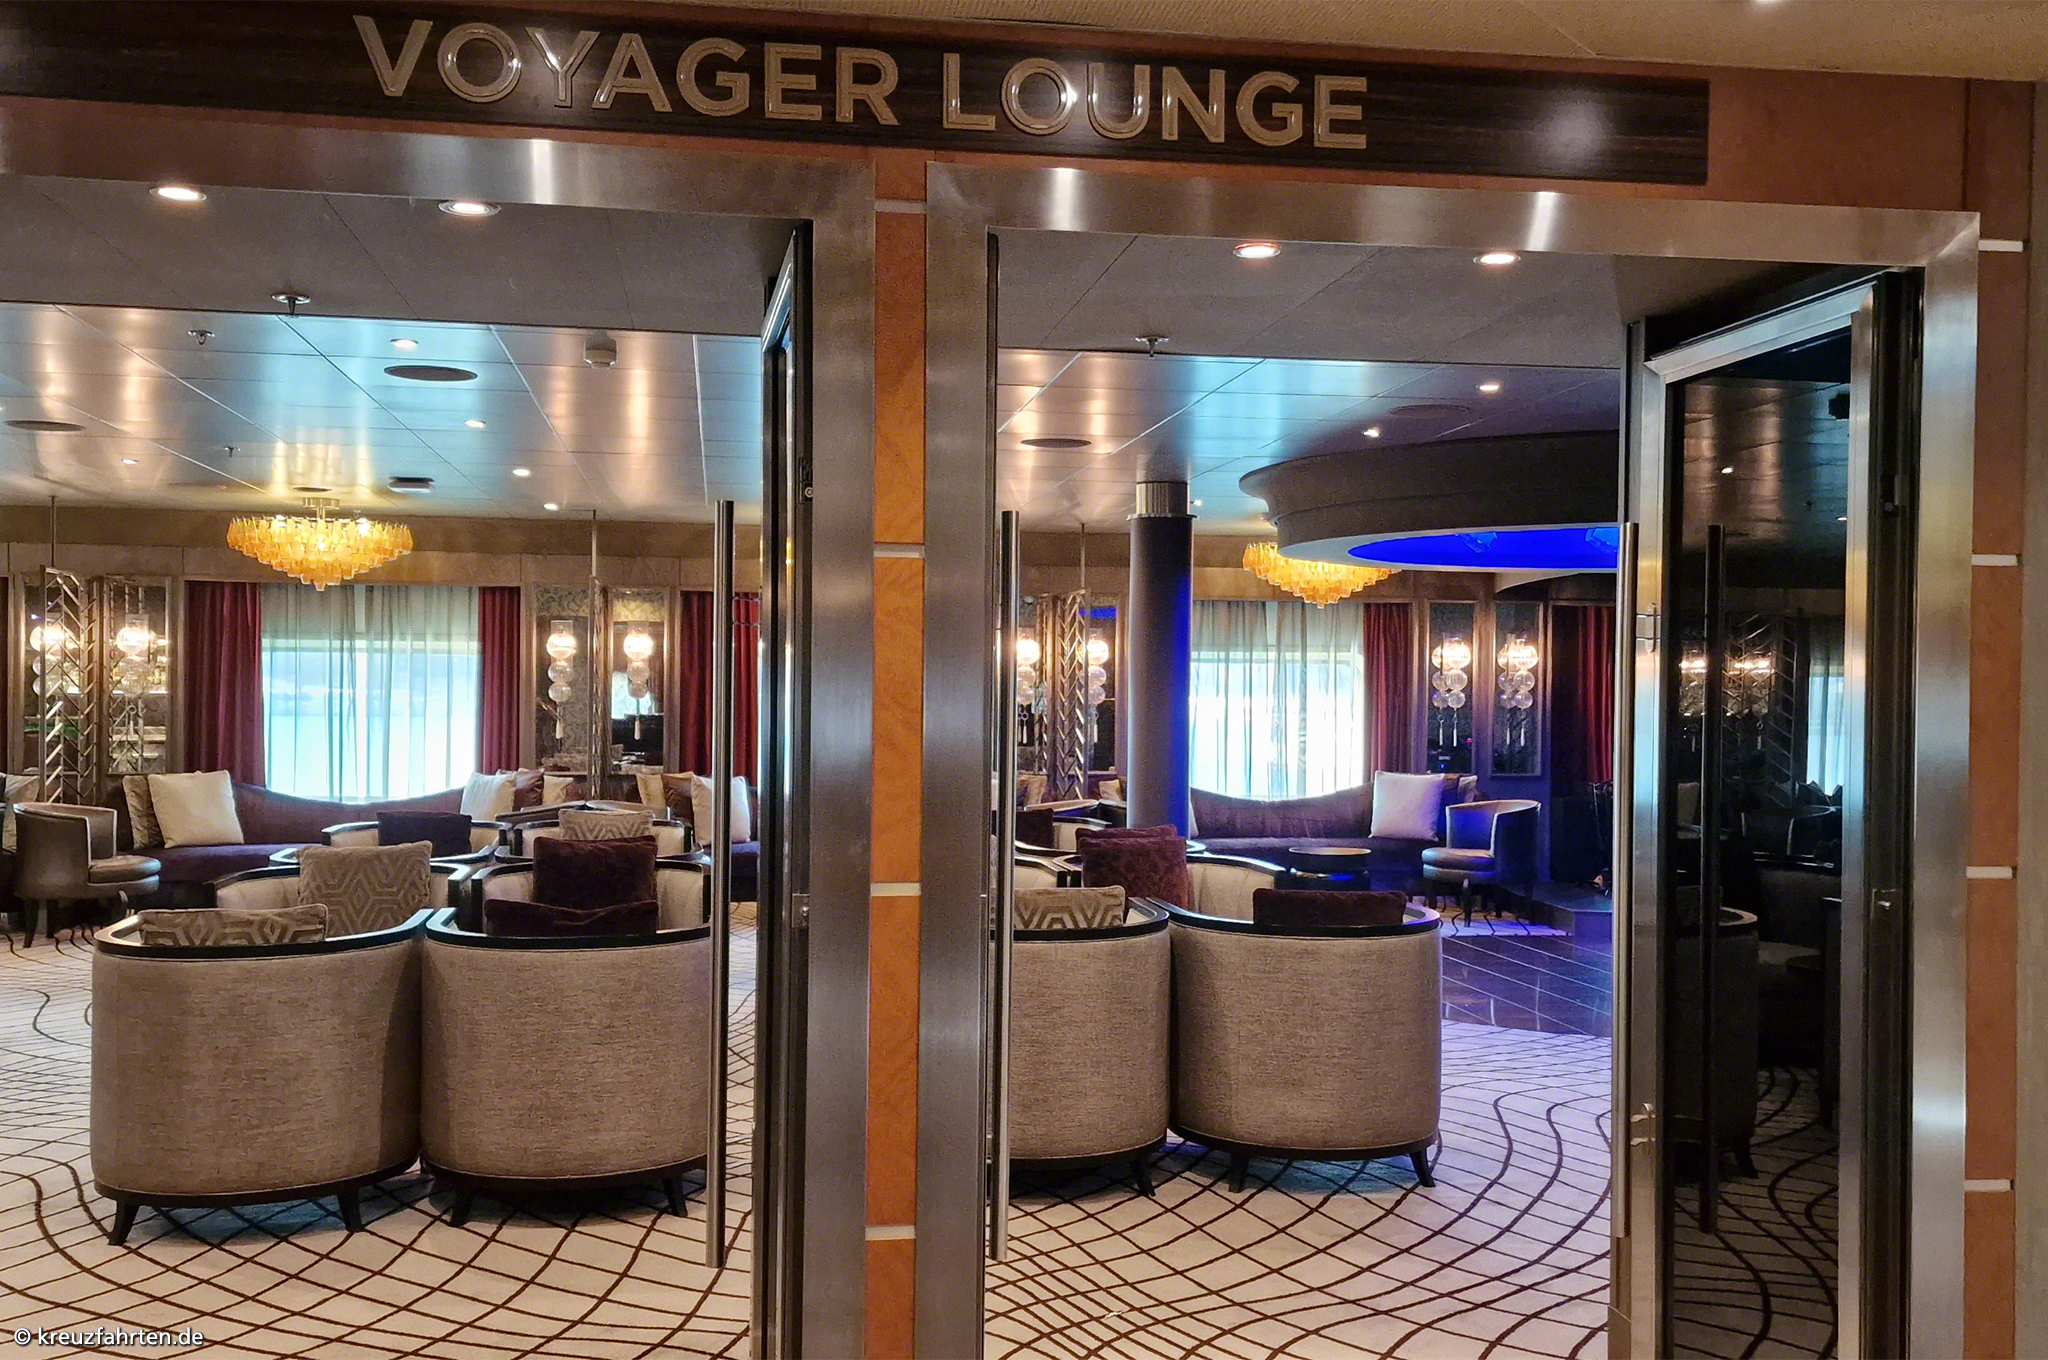 Voyager Lounge